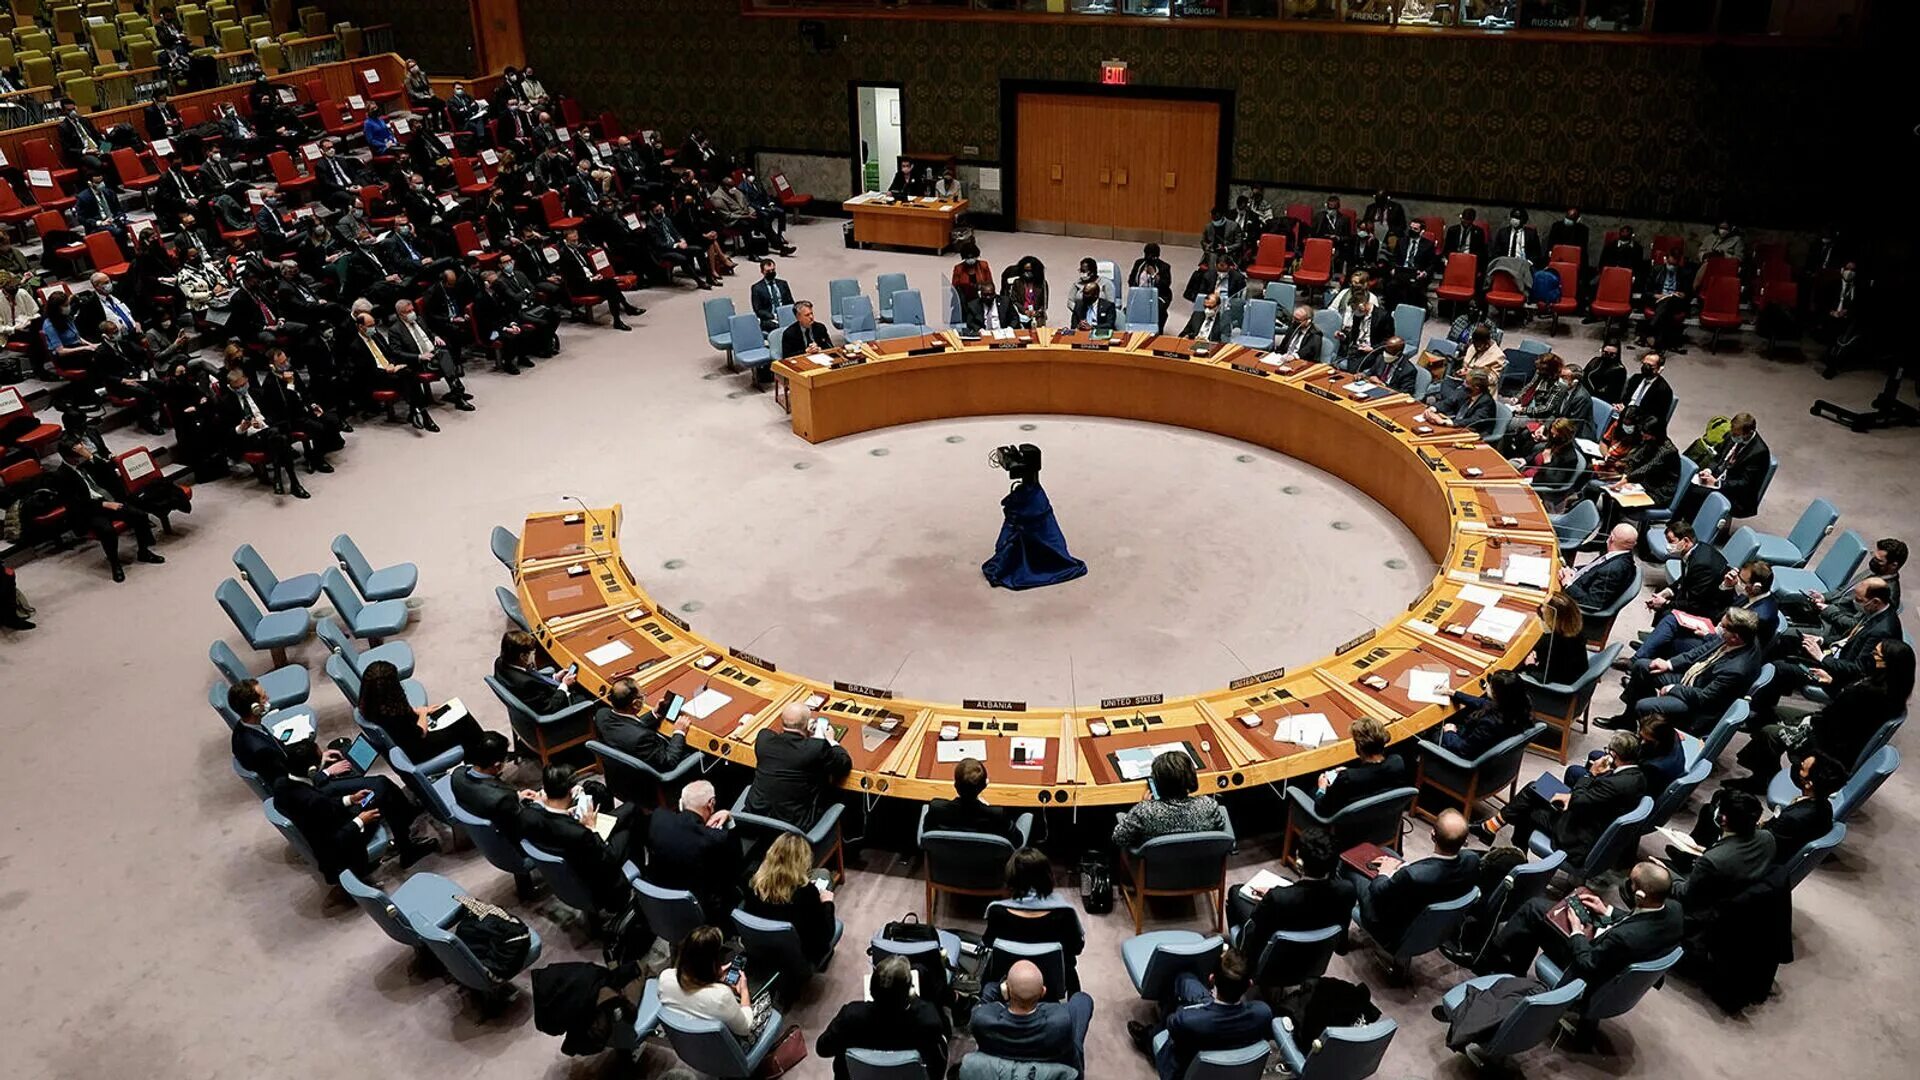 Оон 20 ноября 1989. Заседание Совбеза ООН 25.06.1950. Зал совета безопасности ООН. Совет безопасности ООН И Генеральная Ассамблея ООН. Зал Совбеза ООН.